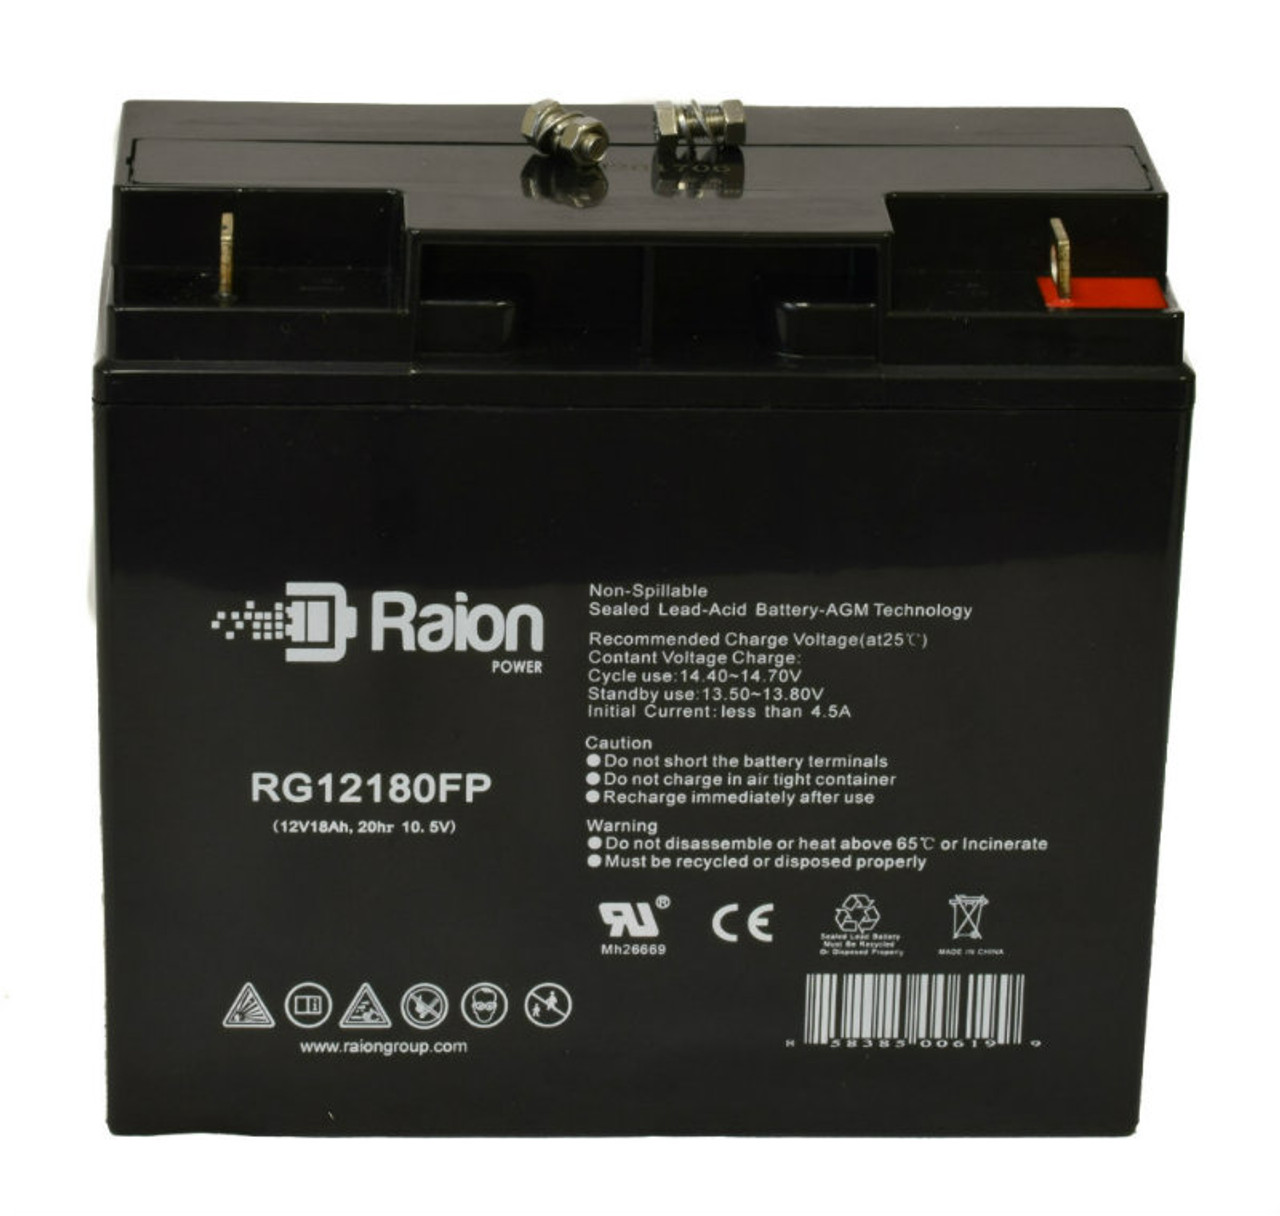 Raion Power RG12180FP 12V 18Ah Lead Acid Battery for Furukawa 12m15B